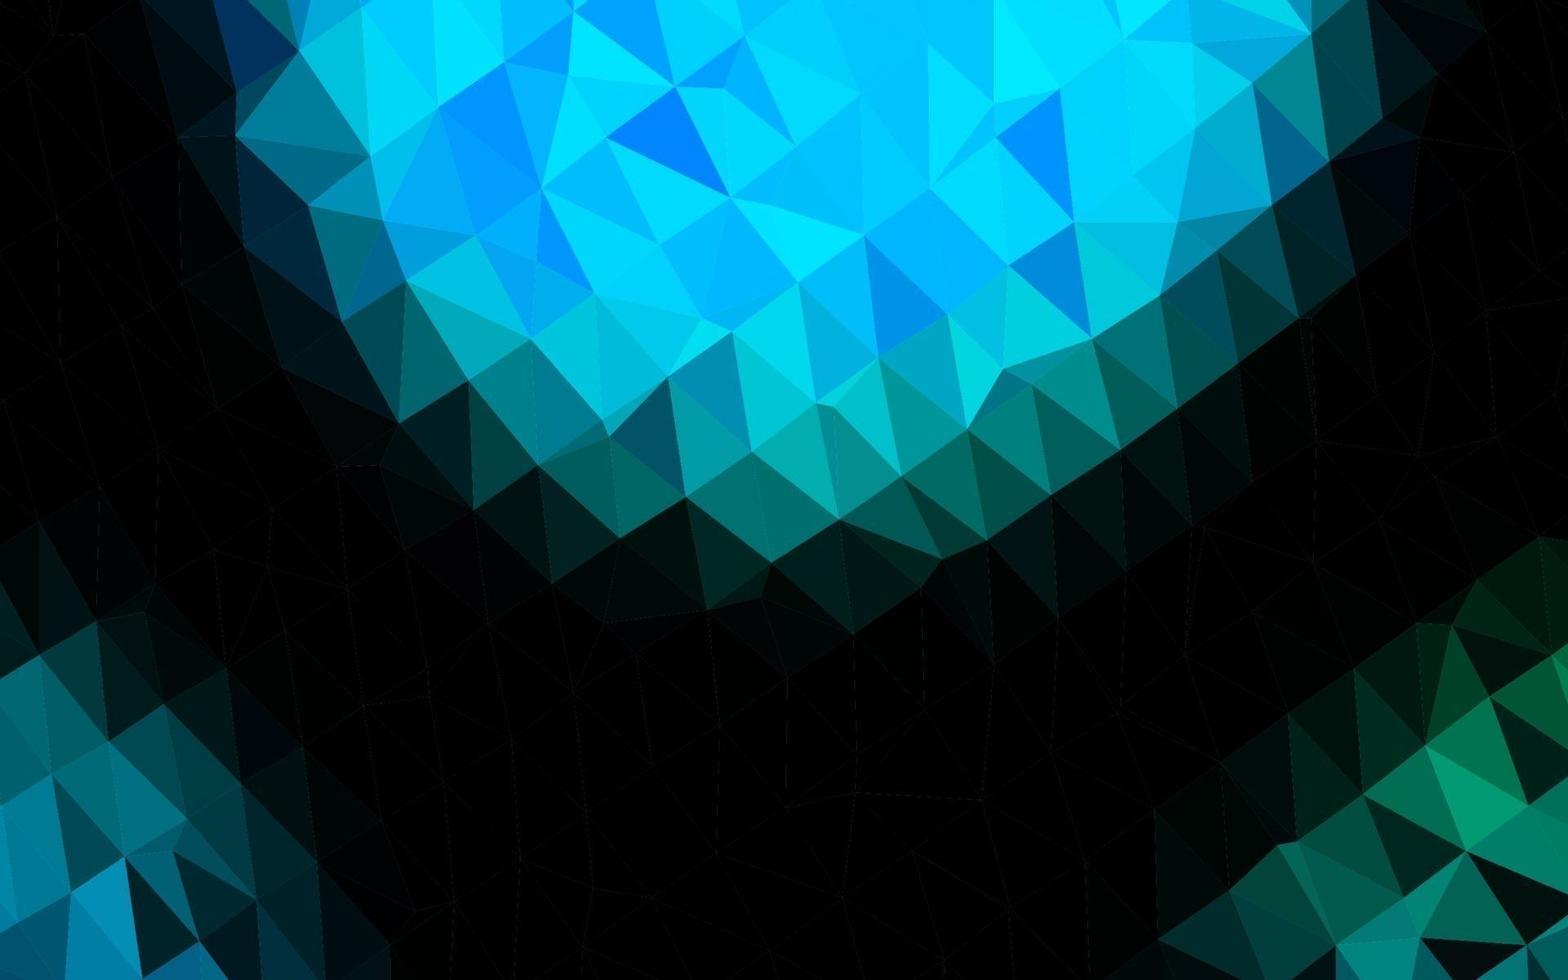 mise en page abstraite de polygone vectoriel bleu clair et vert.